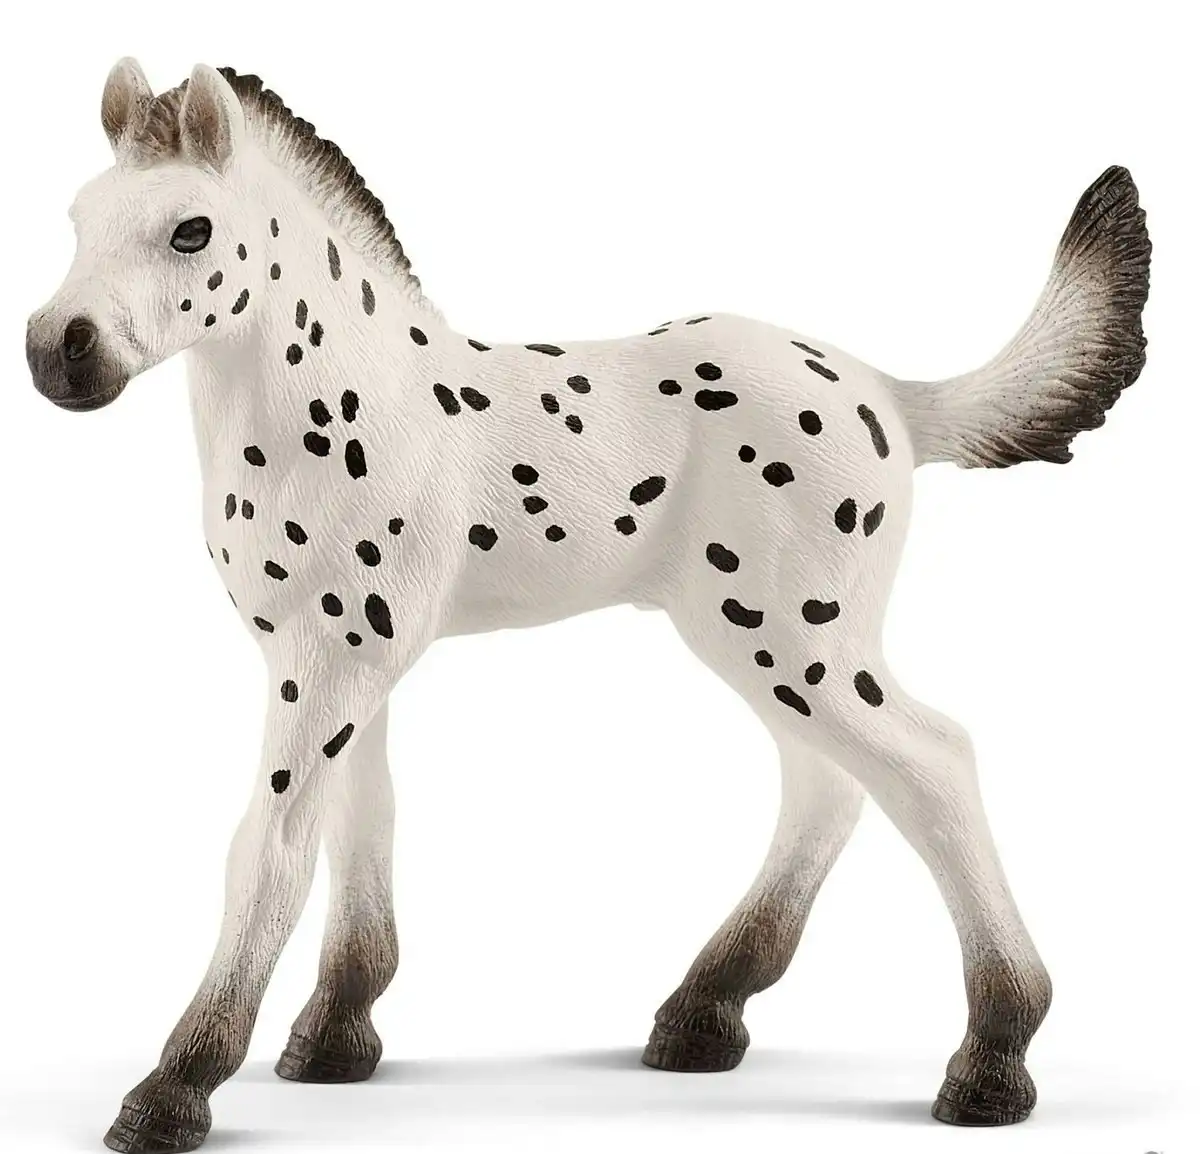 Schleich - Knapstrupper Foal Horse Figurine